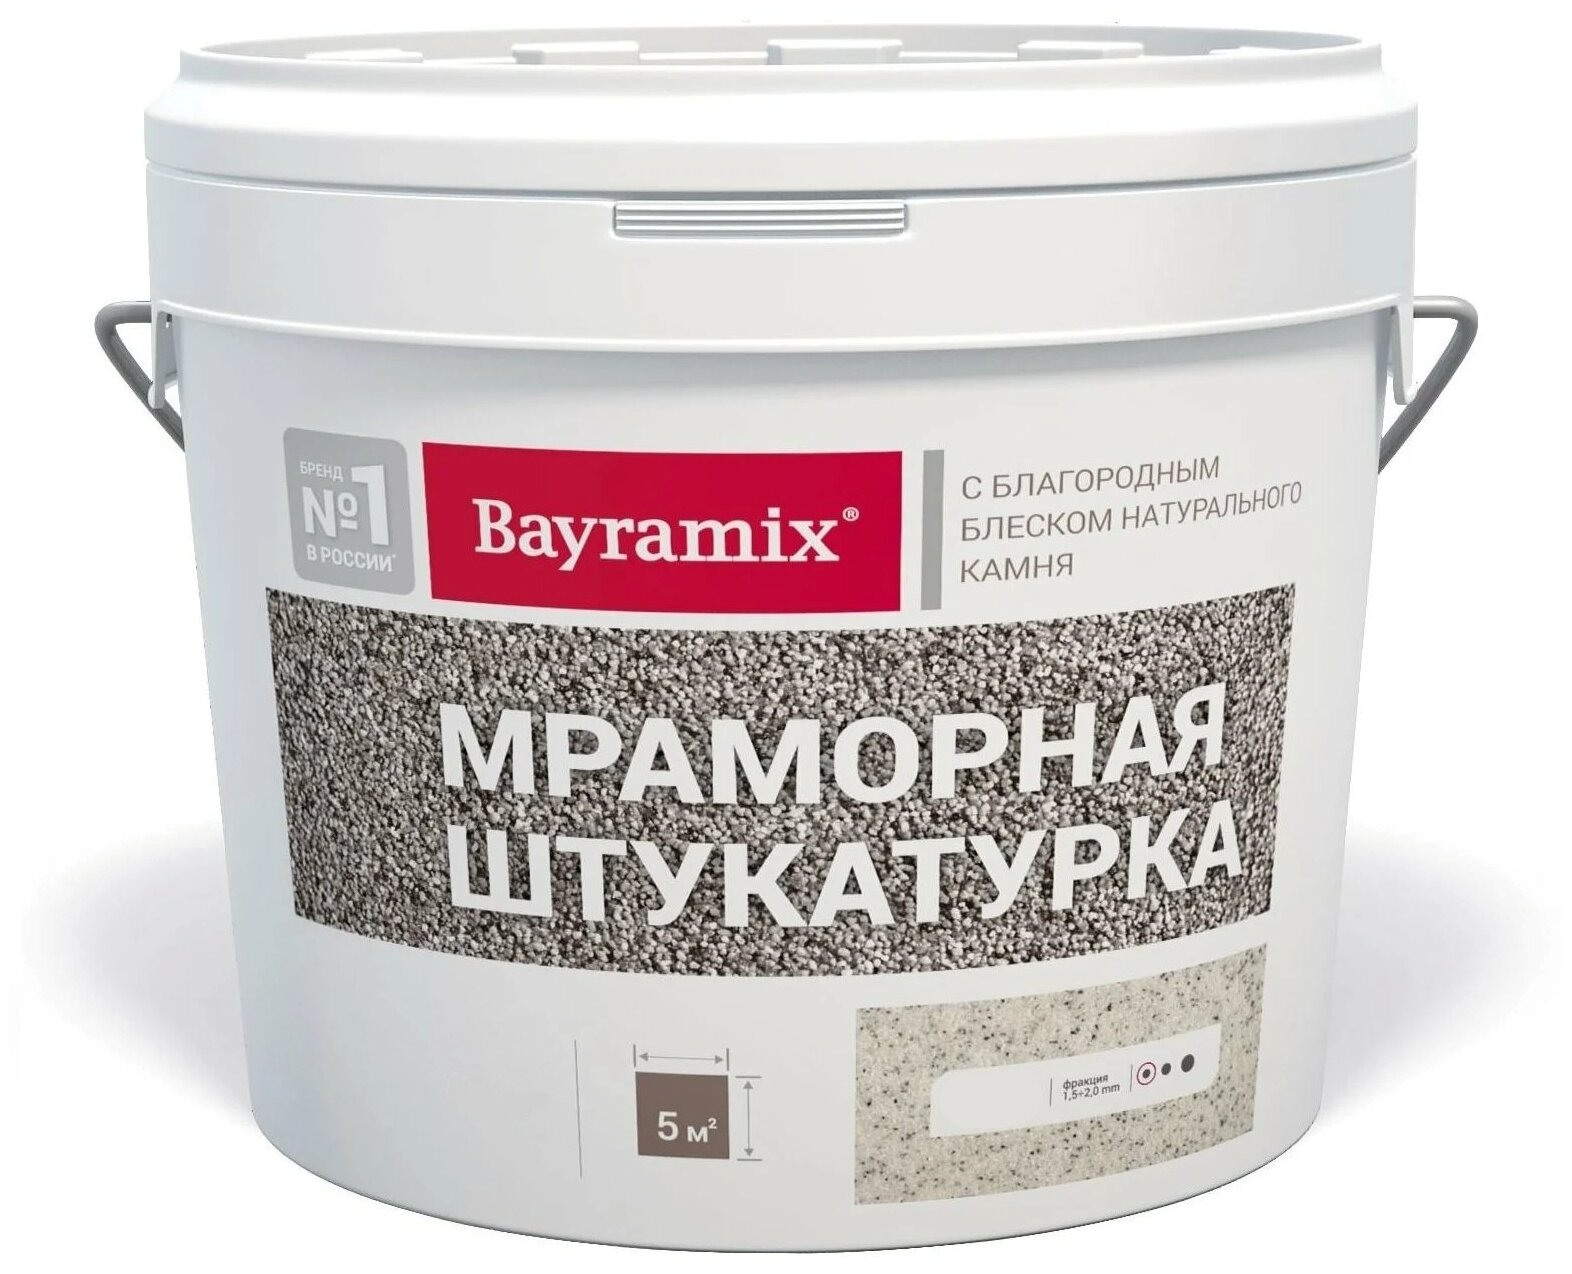 Декоративное покрытие Bayramix Мраморная штукатурка K с блеском натурального камня, 1.5 мм, kashmir gold, 15 кг